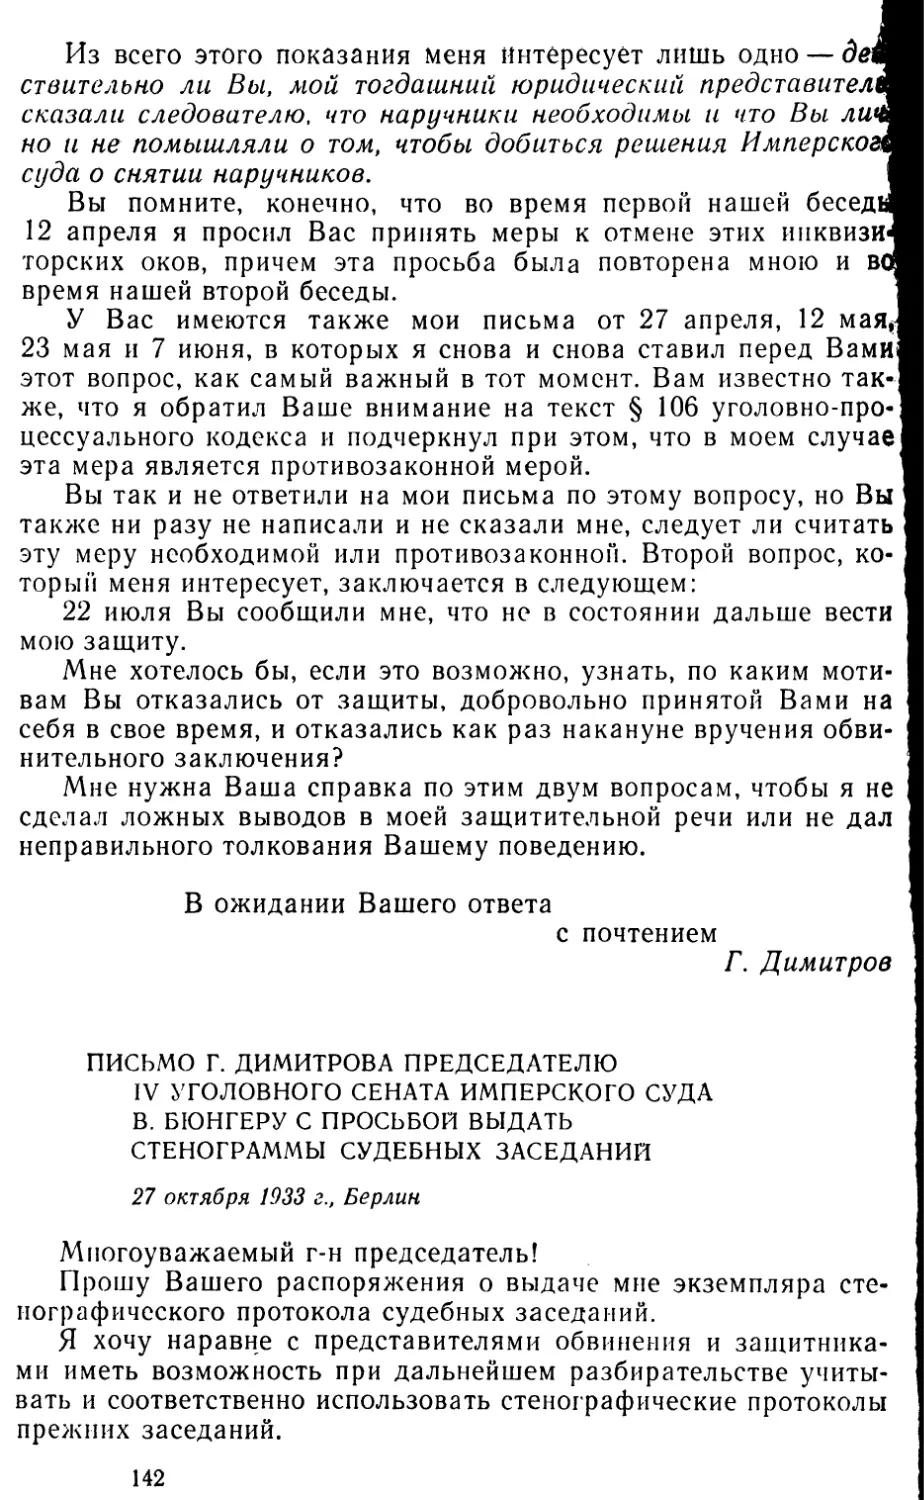 Письмо Г. Димитрова председателю IV уголовного сената Имперского суда В. Бюпгеру с просьбой выдать стенограммы судебных заседаний. 27 октября 1933 г